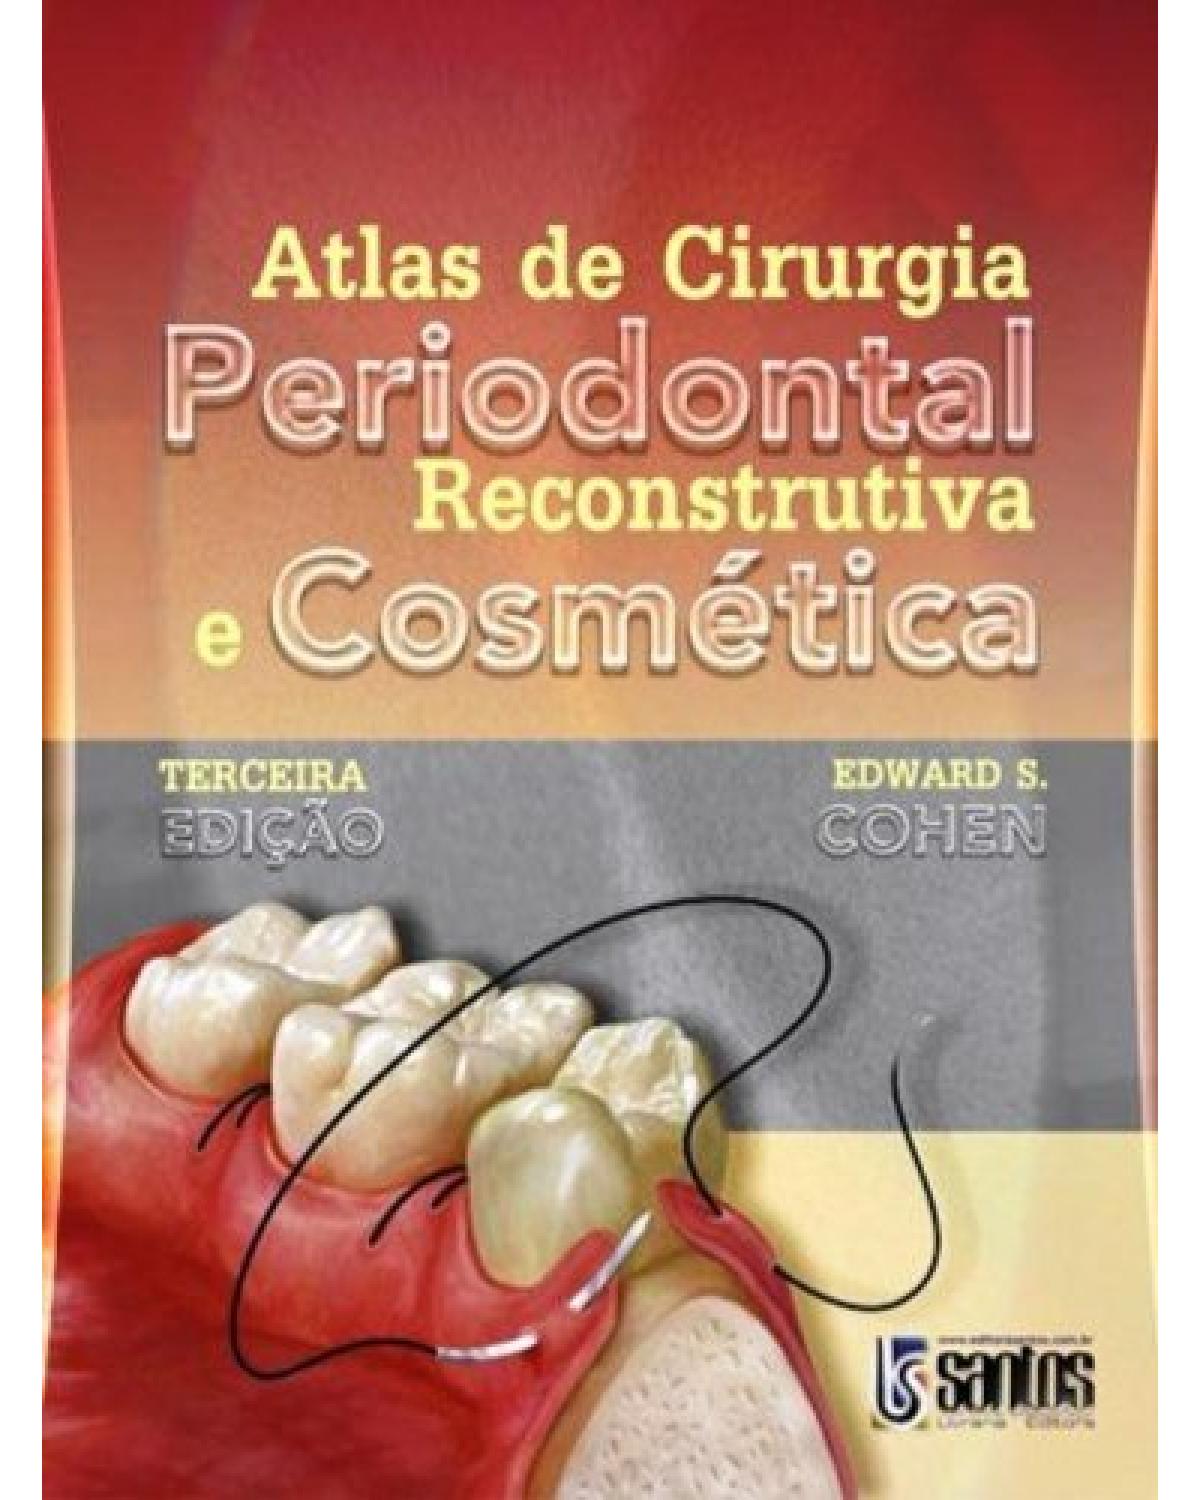 Atlas de cirurgia periodontal reconstrutiva e cosmética - 3ª Edição